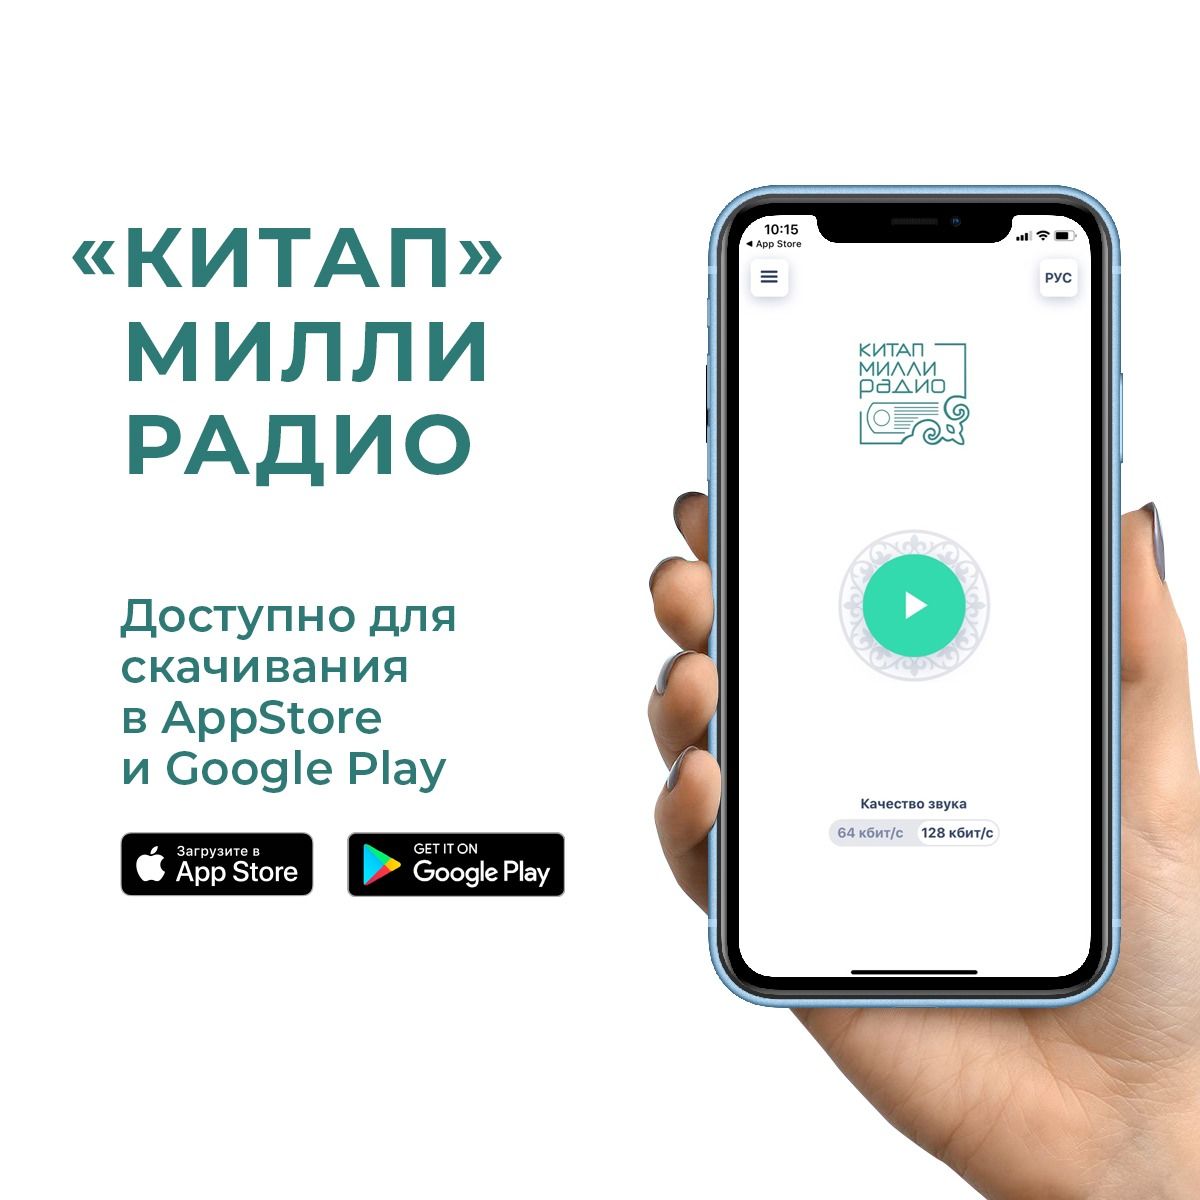 В Татарстане создали специальное приложение для слушателей национального радио «Китап»